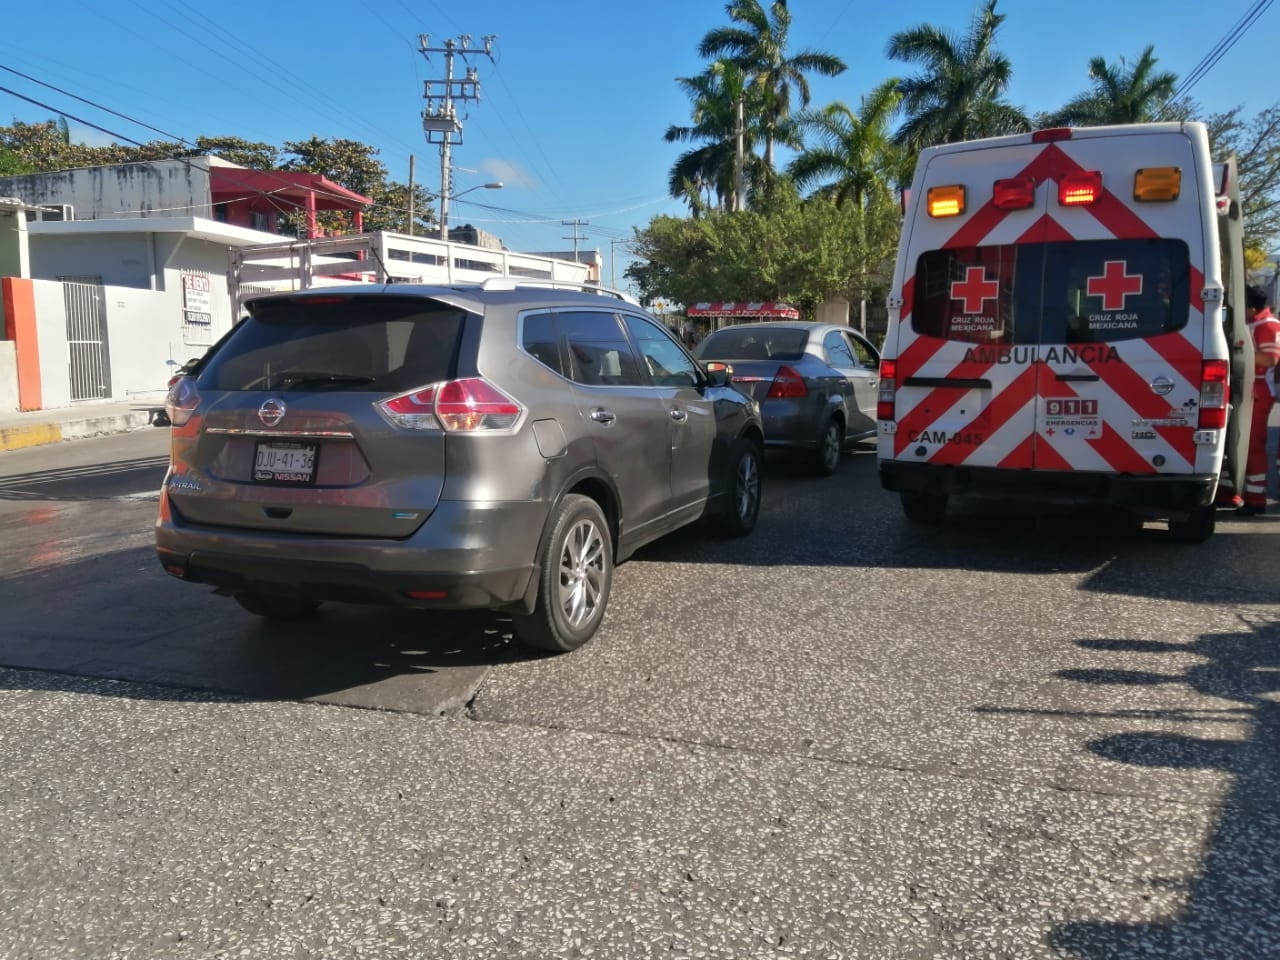 Mototaxista sufre fractura tras fuerte choque en Ciudad del Carmen